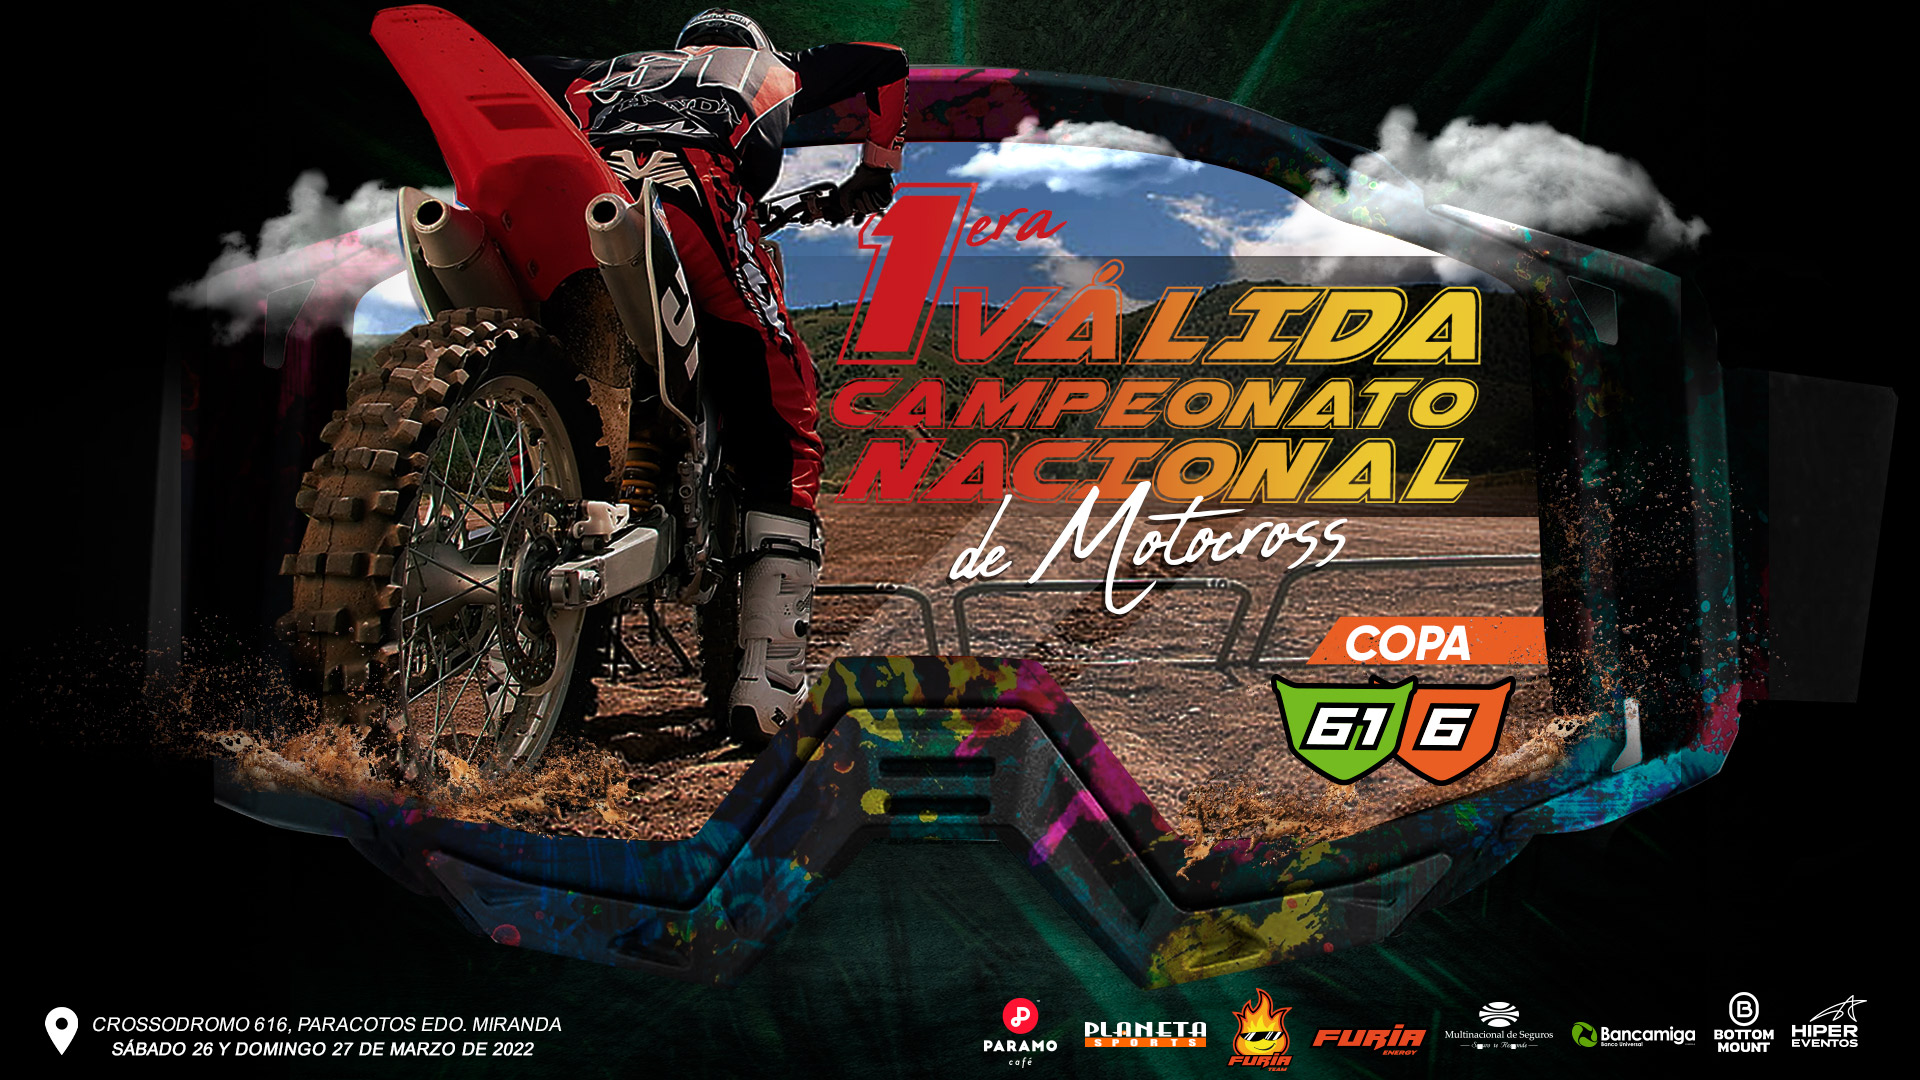 1era Válida Campeonato Nacional de Motocross - Copa 616